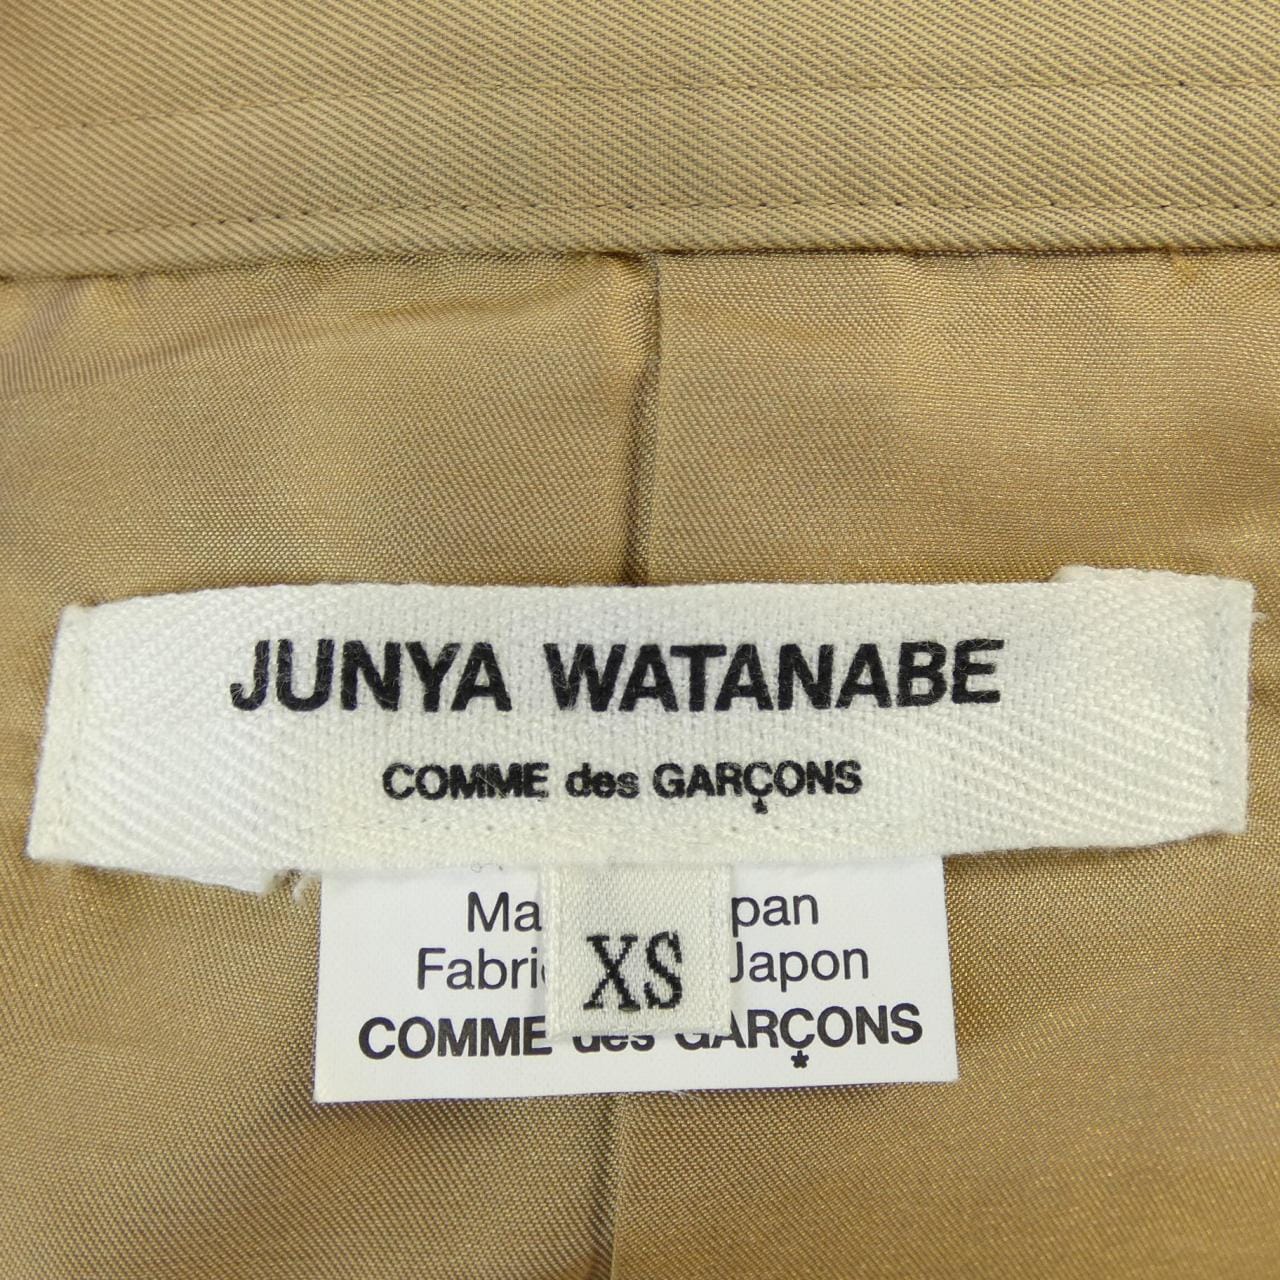 JUNYA WATANABE coat